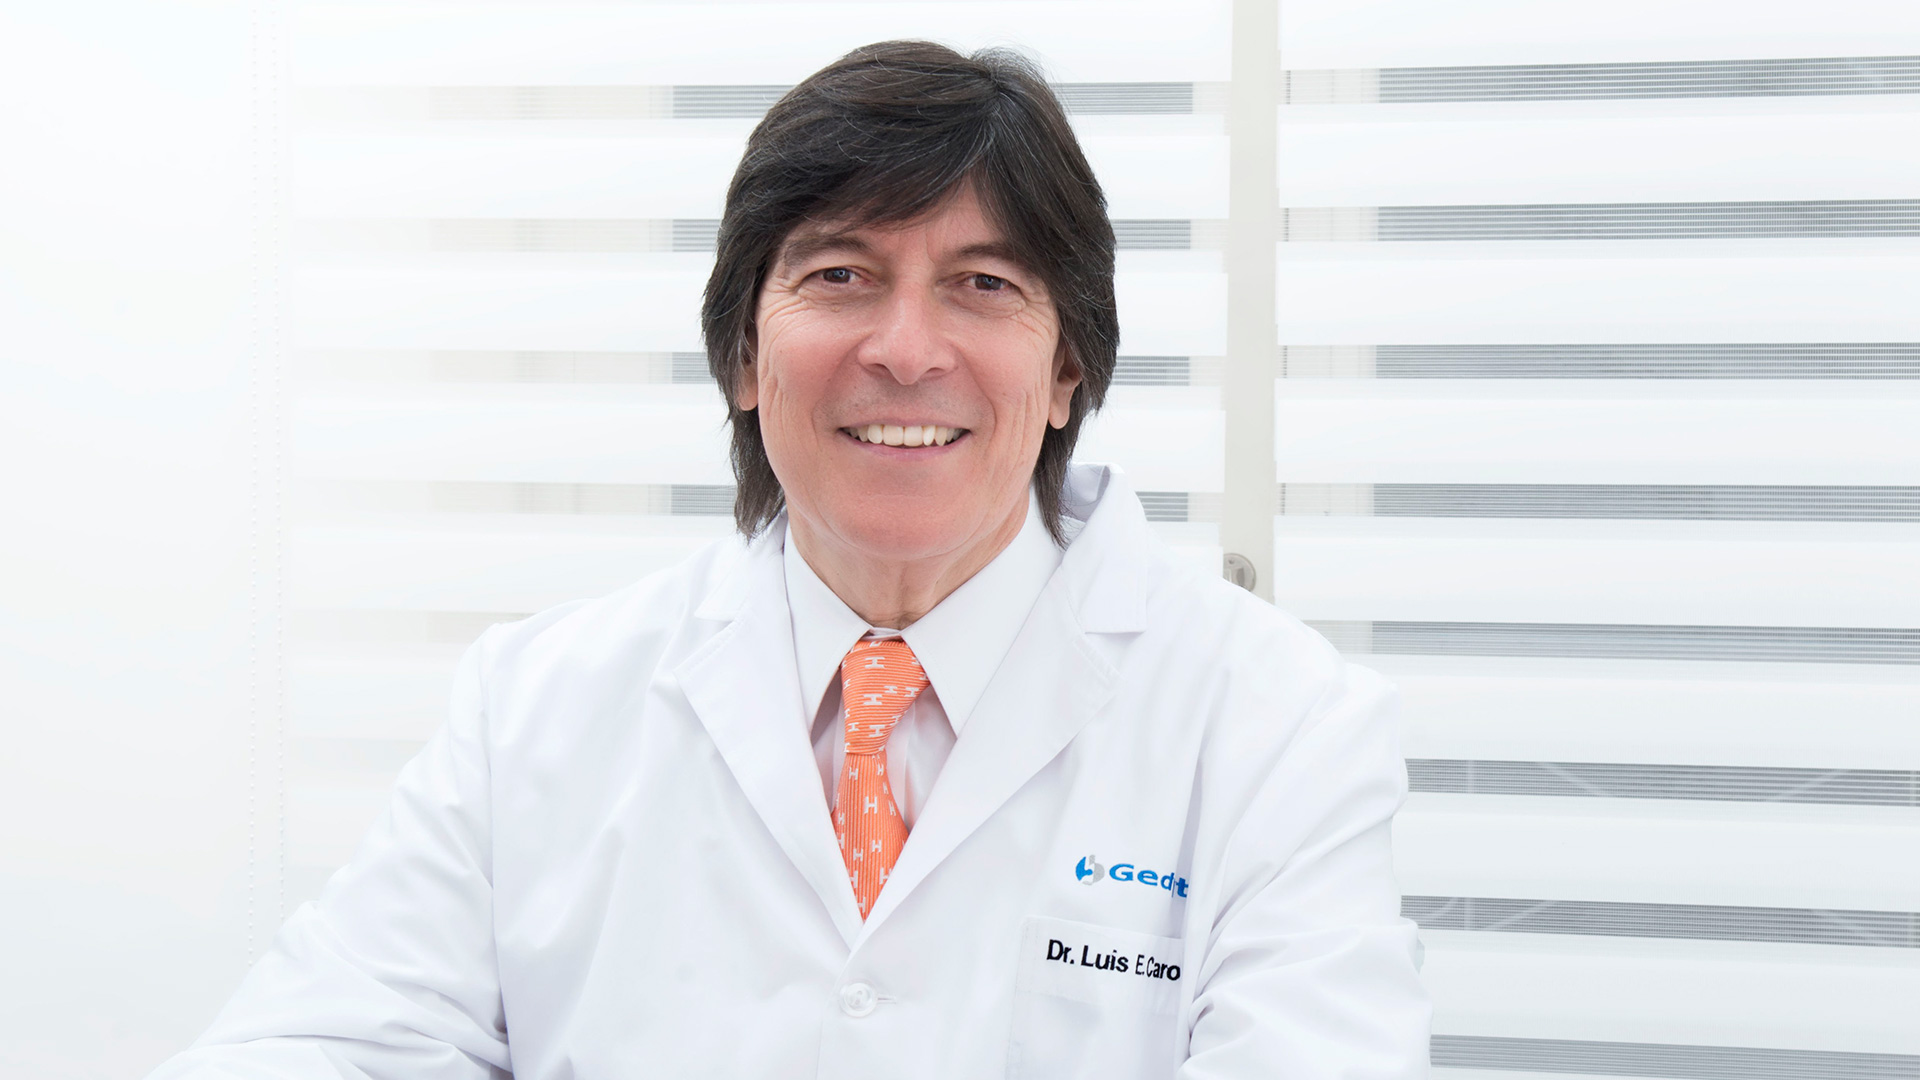 El gastroenterólogo Luis Caro es referente en América Latina, preside la Fundación Gedyt y dirige la carrera de Endoscopía Digestiva de la Universidad de Buenos Aires (Gentileza: Fundación Gedyt)